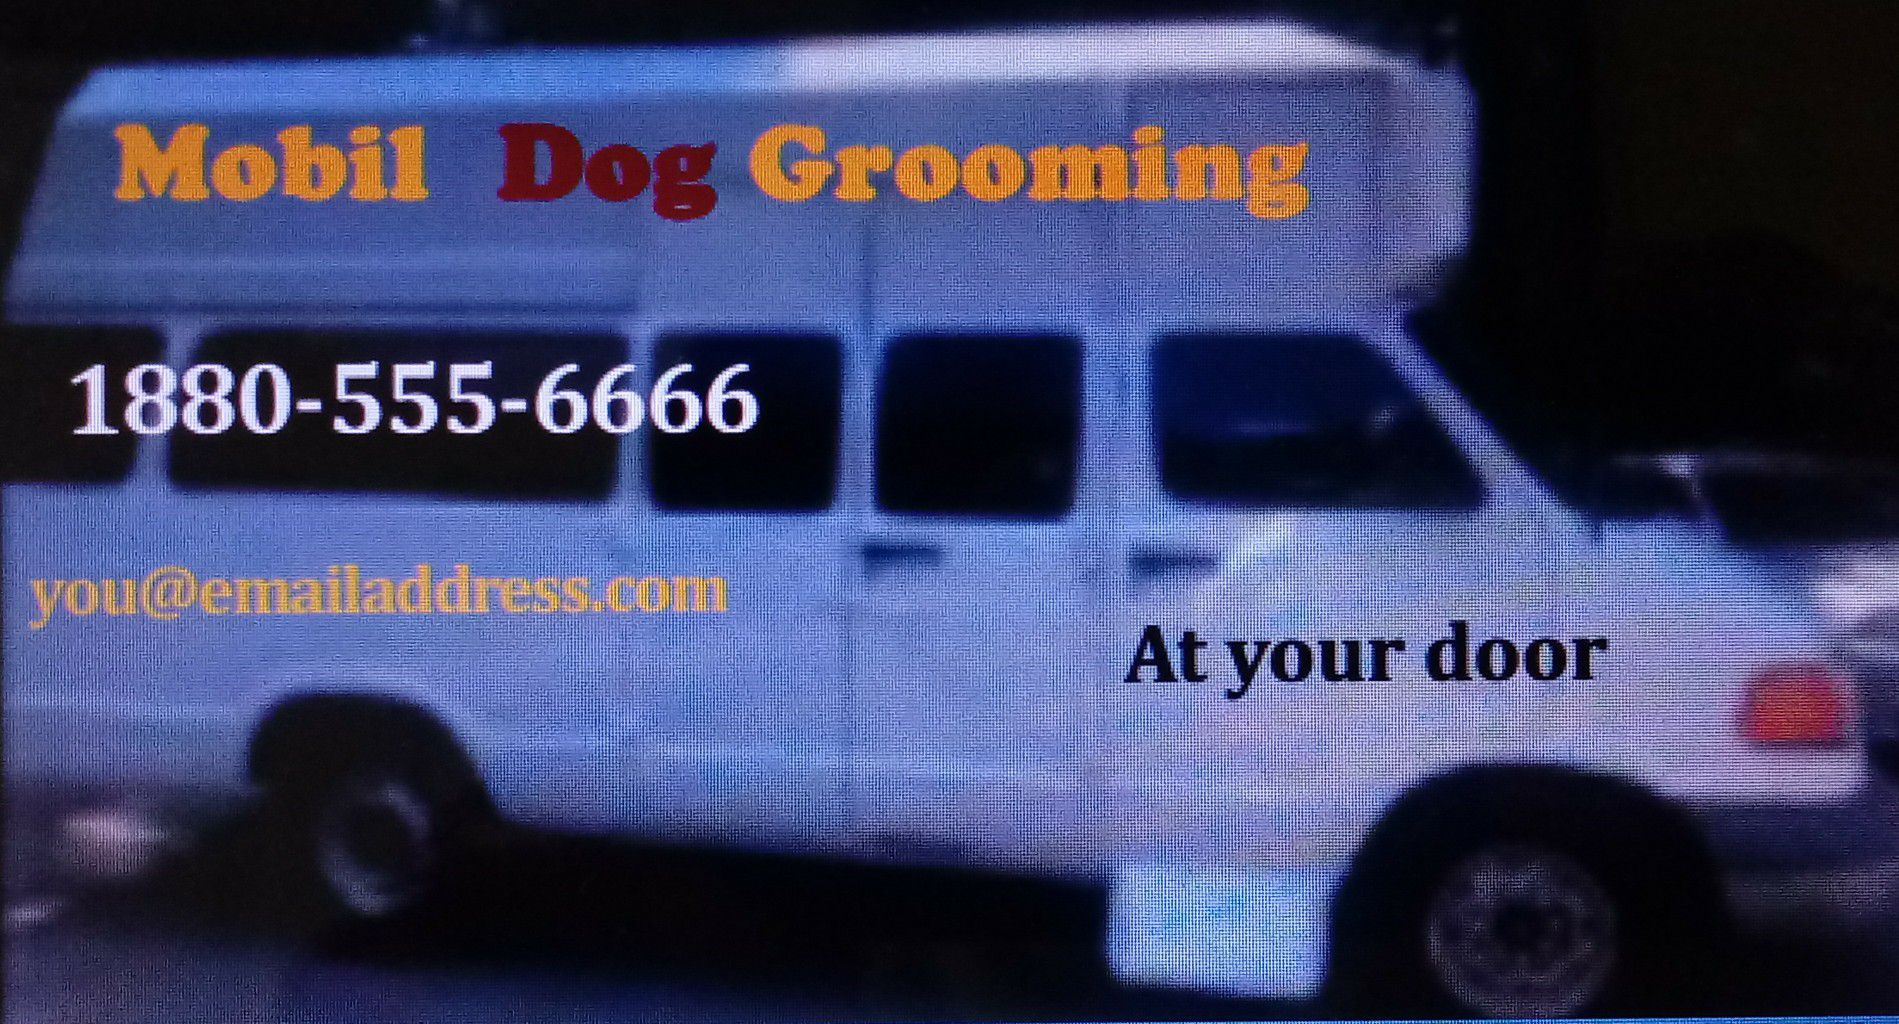 DOG / PET GROOMING VAN